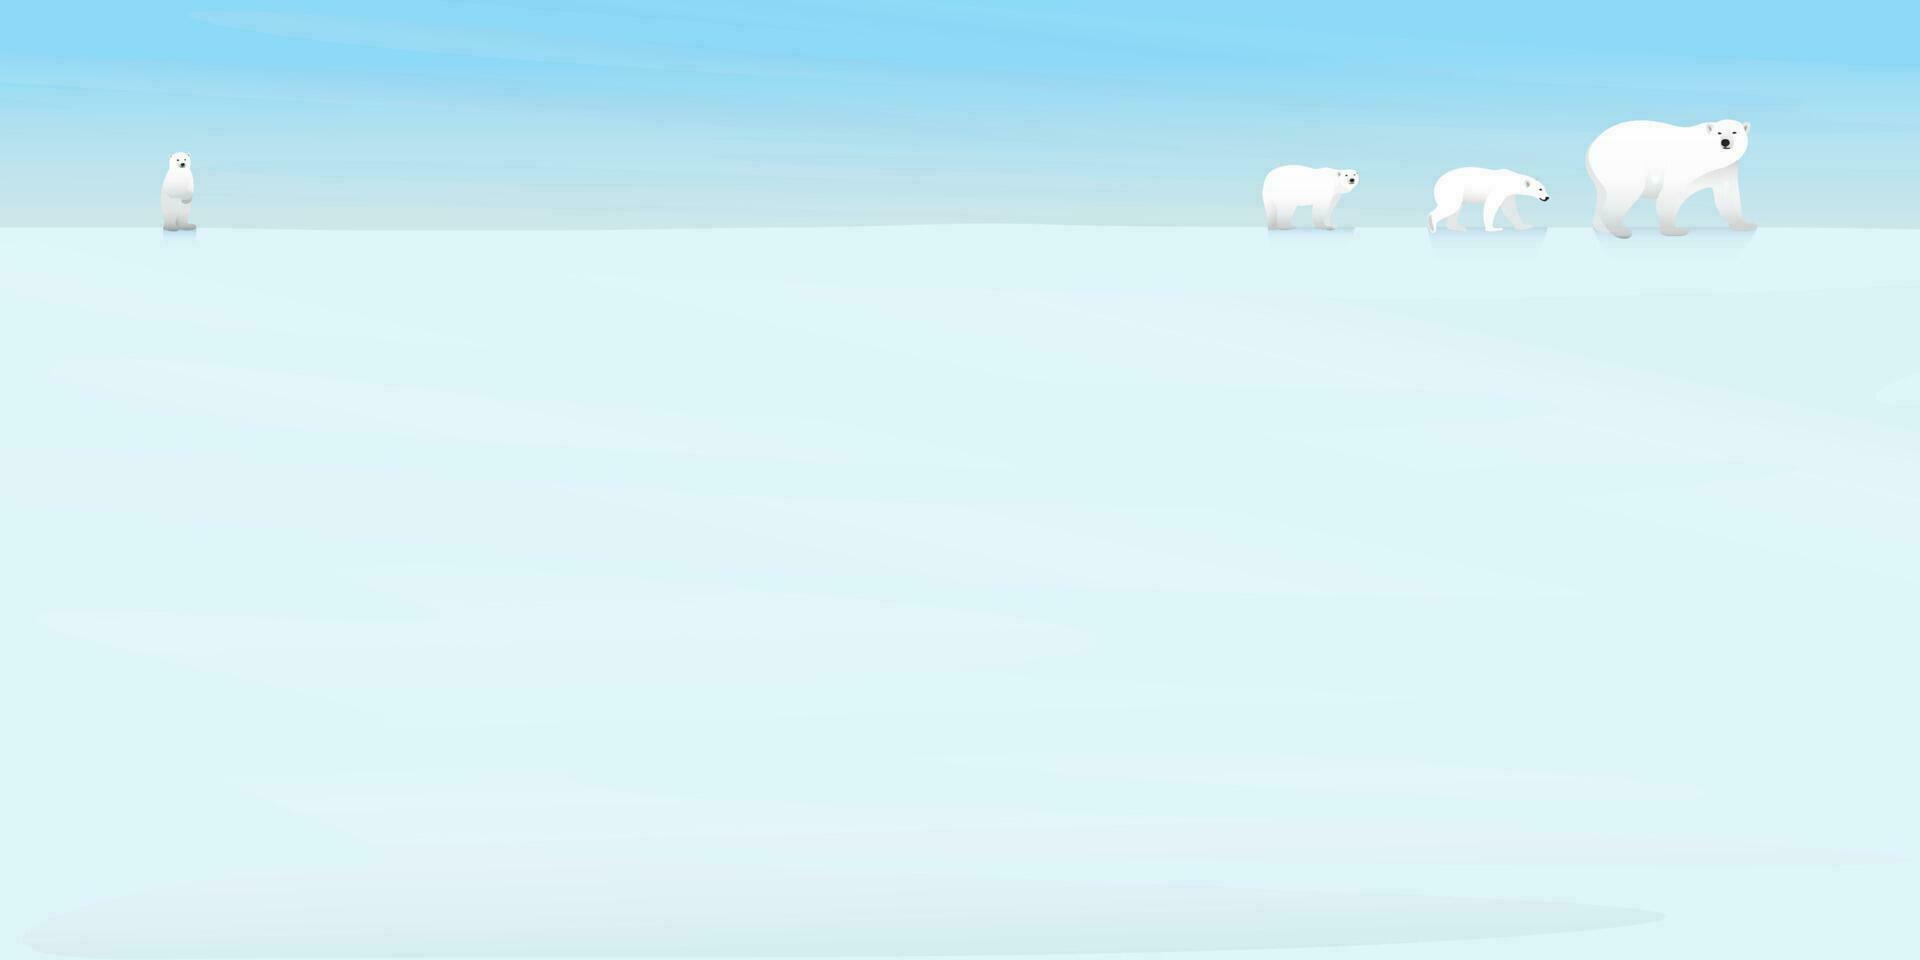 polare orsi famiglia a piedi su ghiaccio a nord polo piatto design vettore illustrazione. neve paesaggio concetto con vuoto spazio.